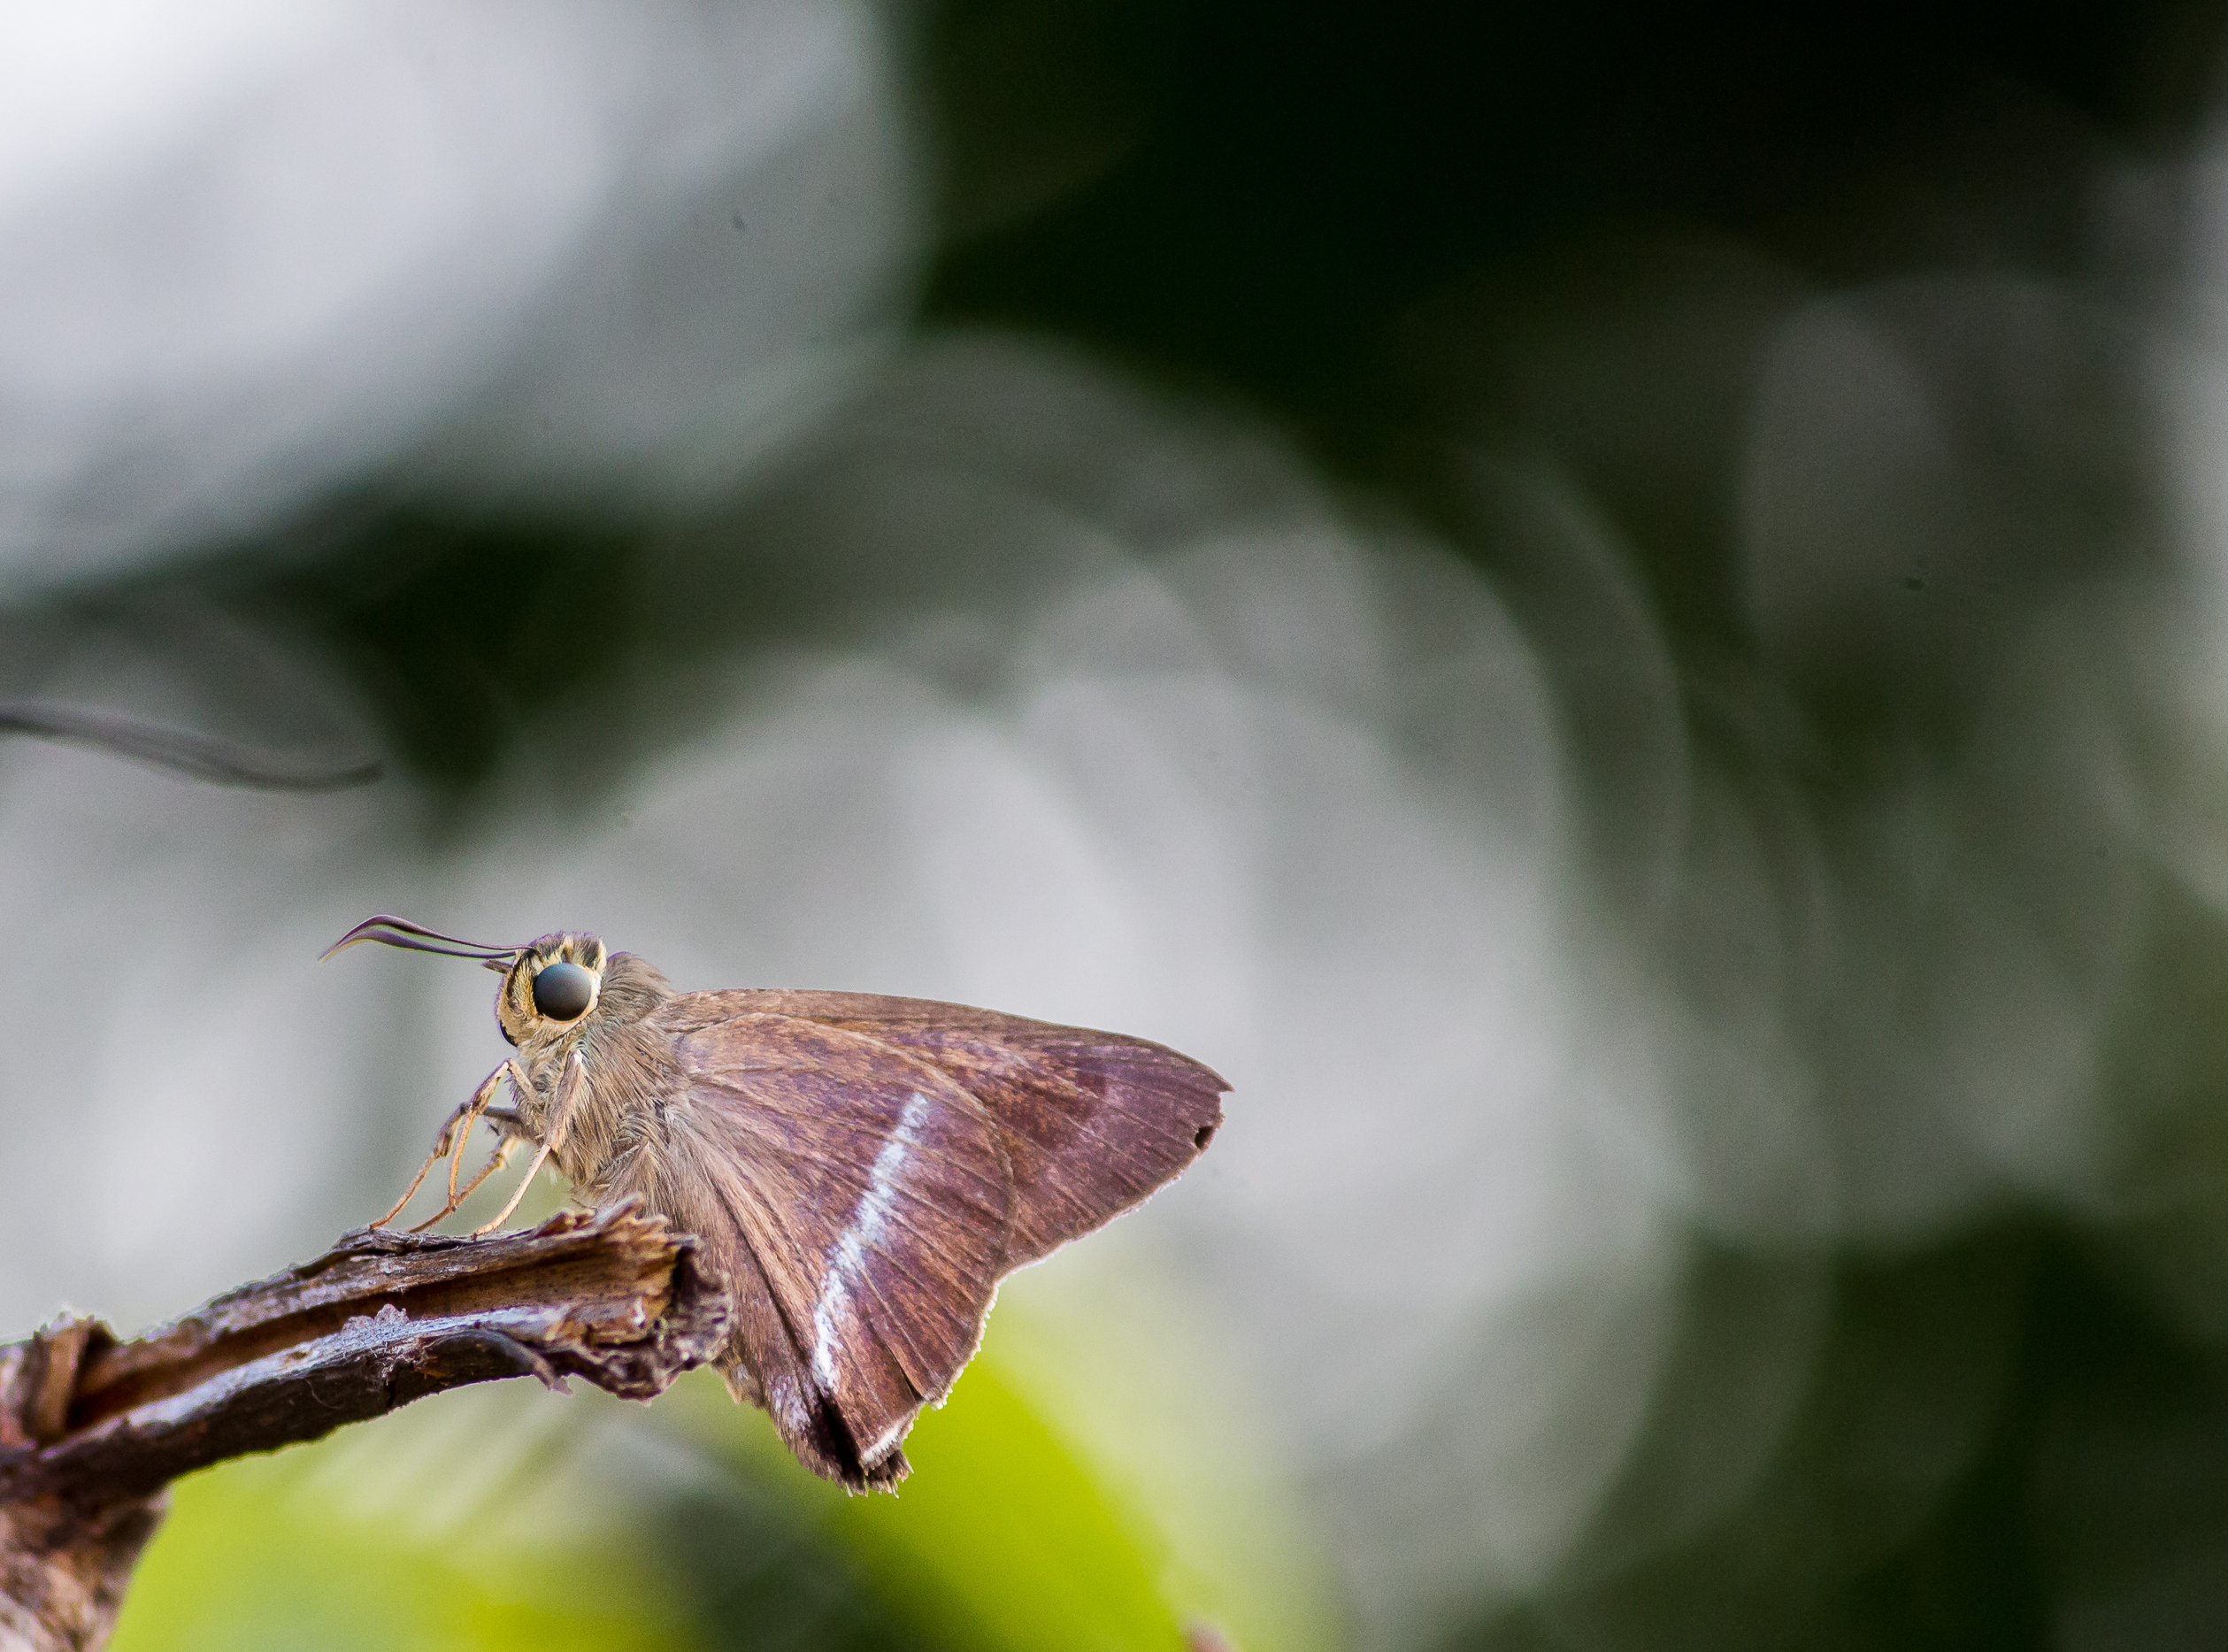 Moth sitting on twig